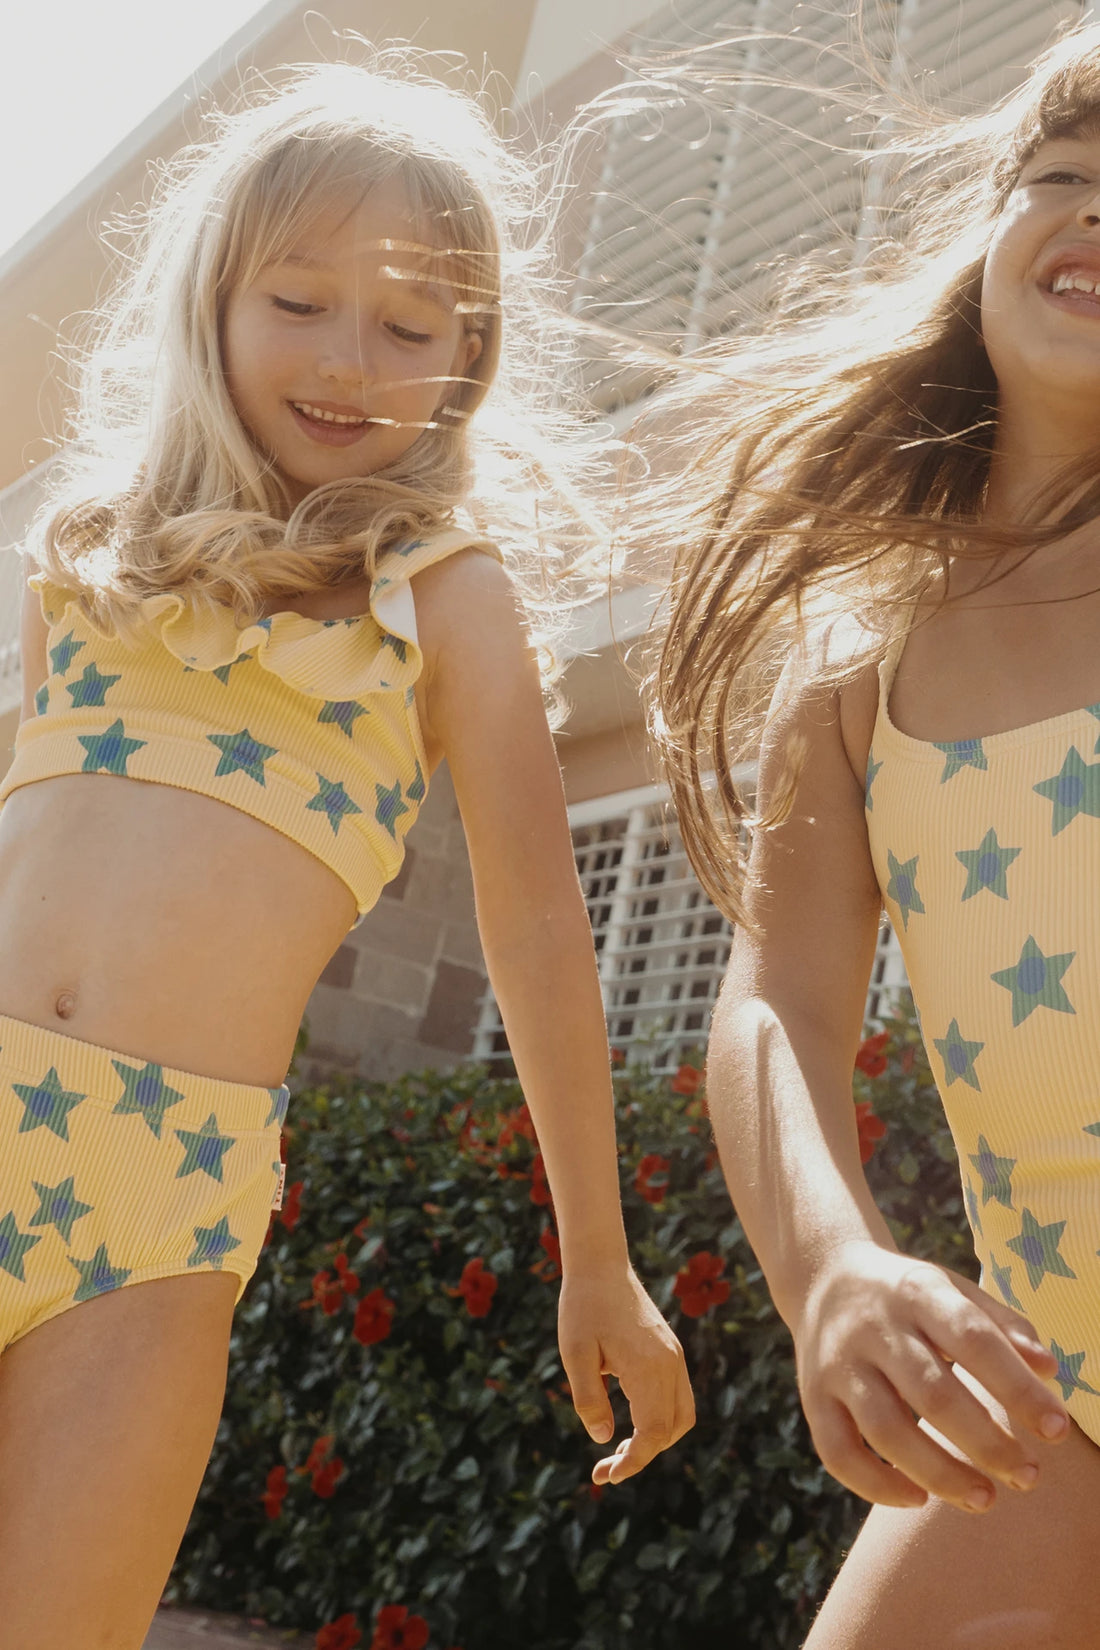 Starflowers Swim Set | Mellow Yellow